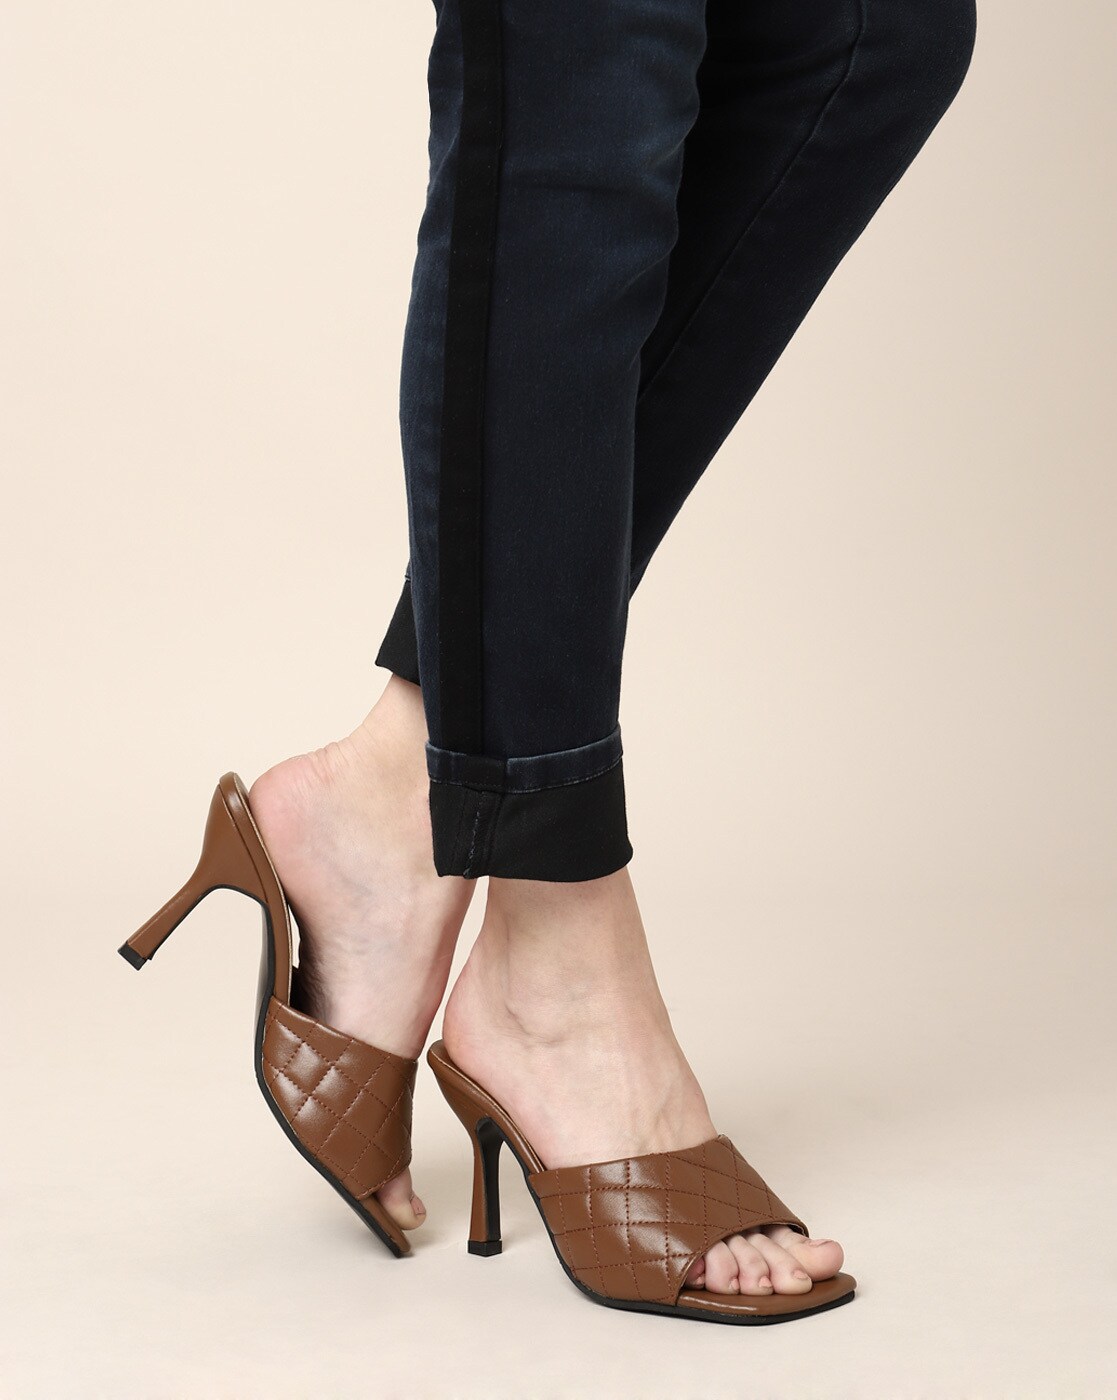 Dolce Vita Heels | Women's Designer Heels | Low, Medium & High Heels